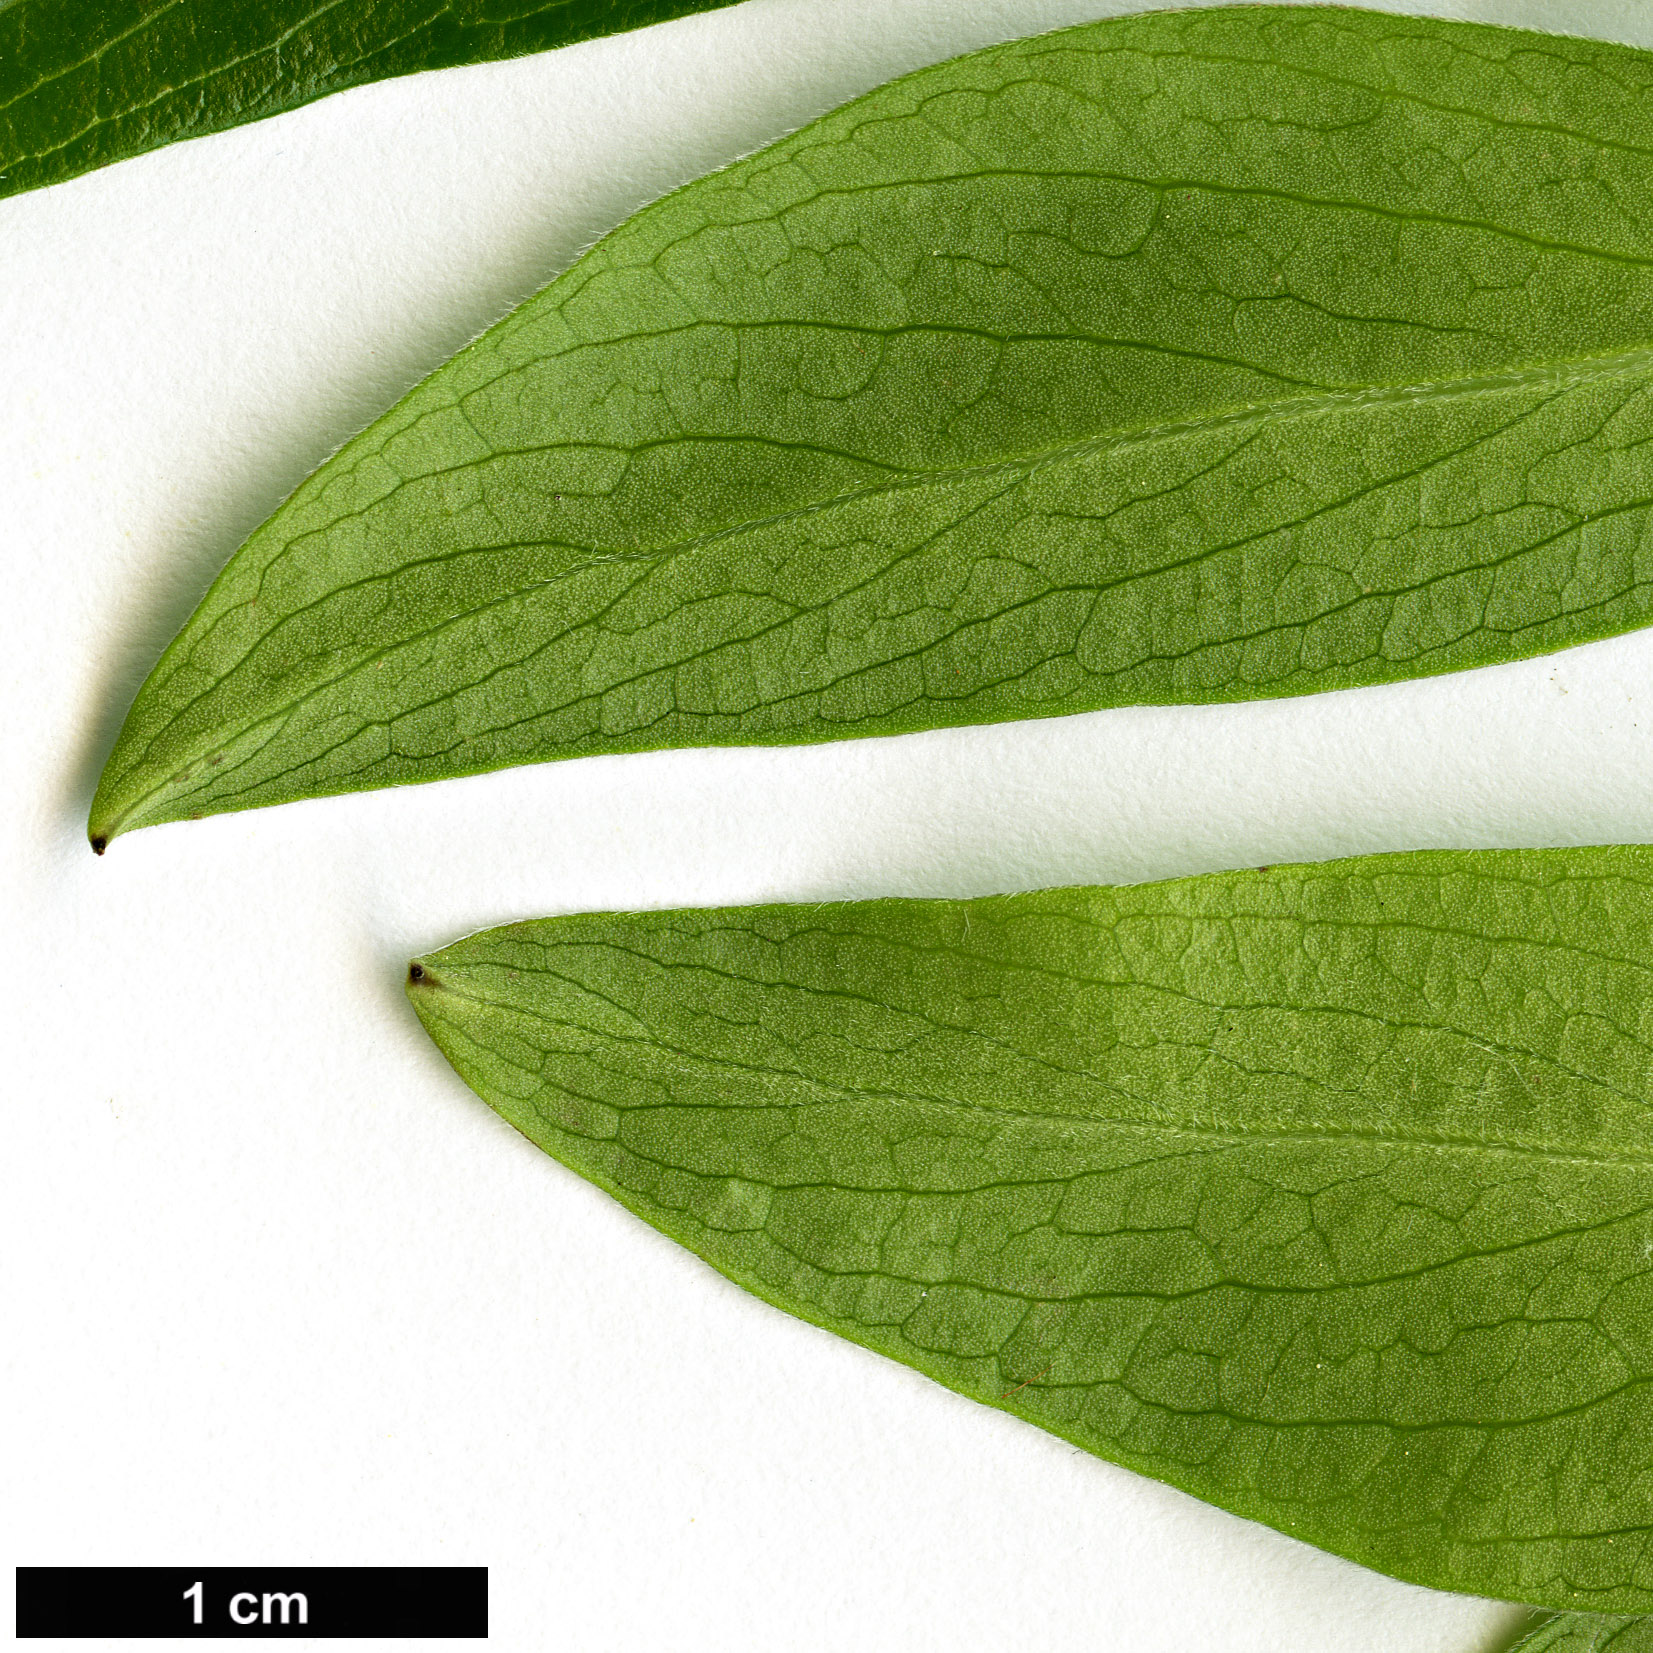 High resolution image: Family: Columelliaceae - Genus: Columellia - Taxon: oblonga - SpeciesSub: subsp. sericea